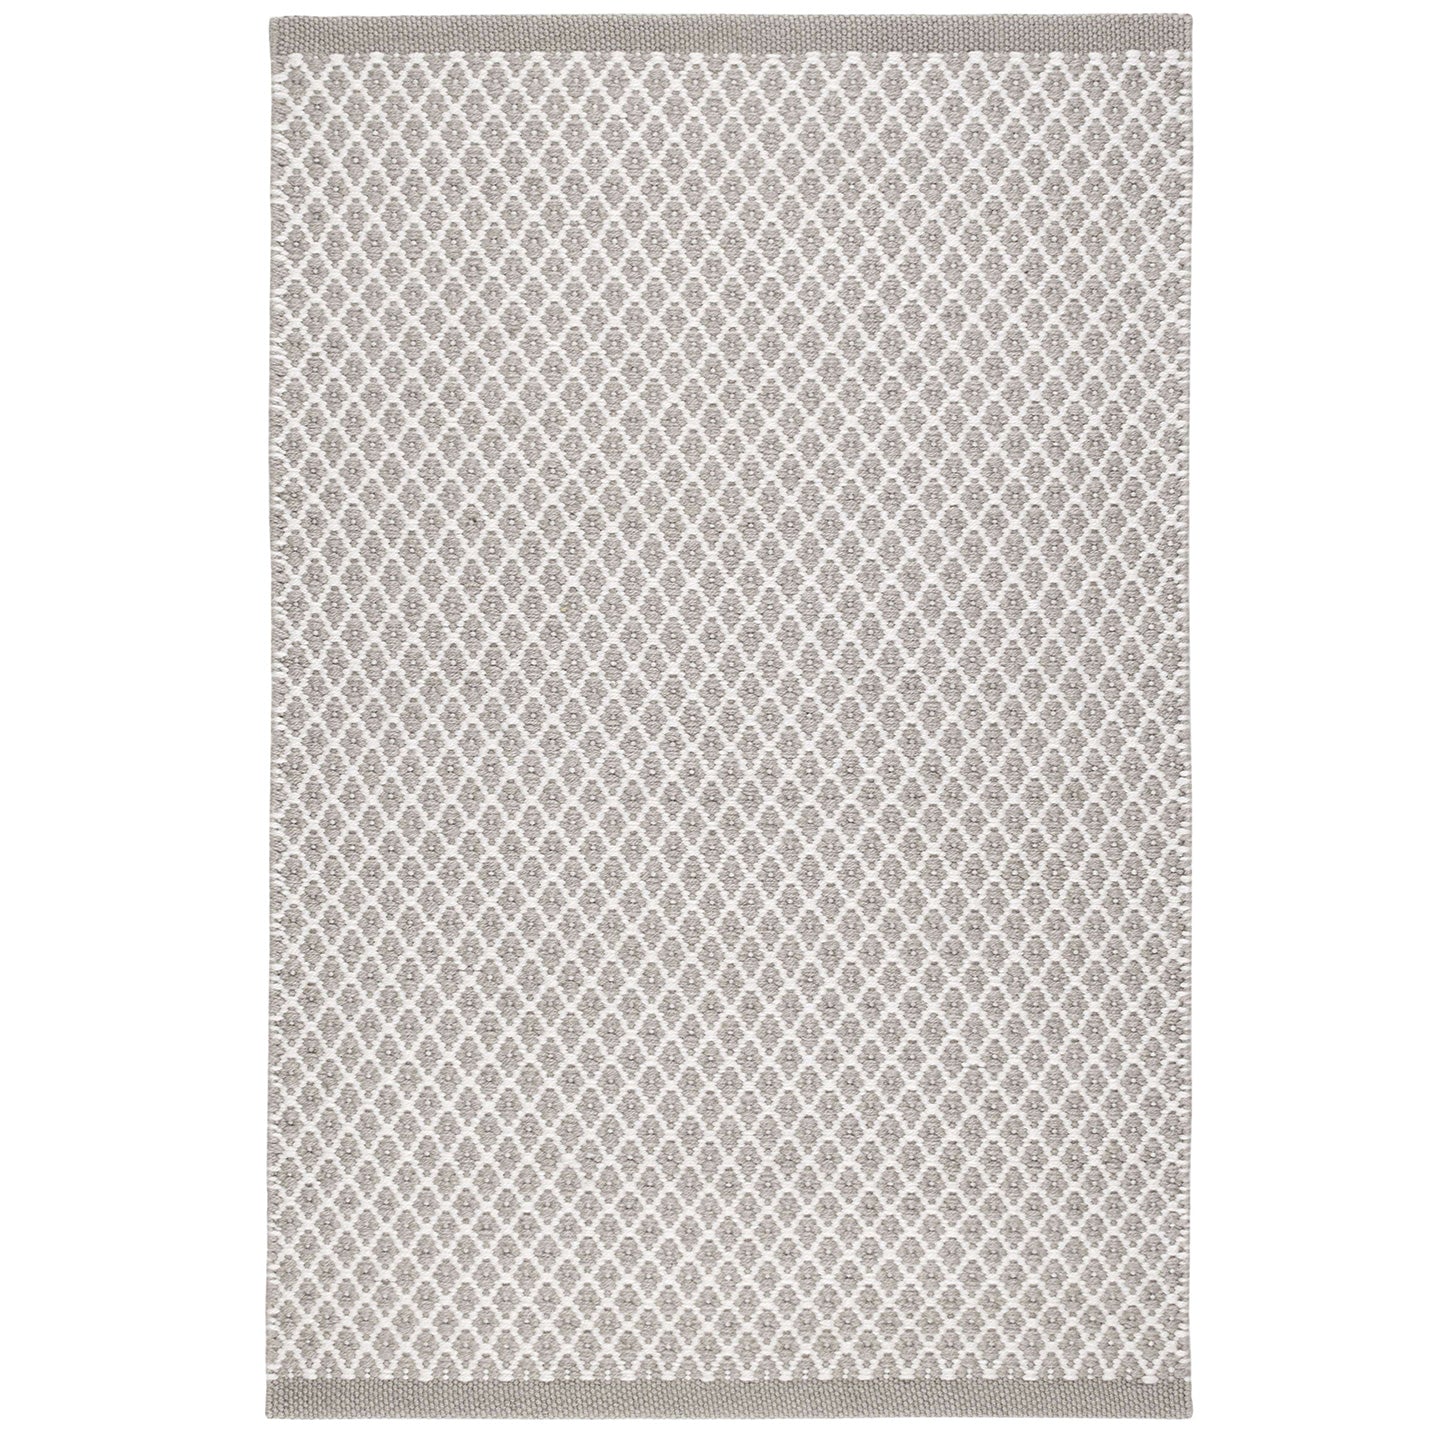 Mainsail Grey Handwoven Indoor/Outdoor Rug